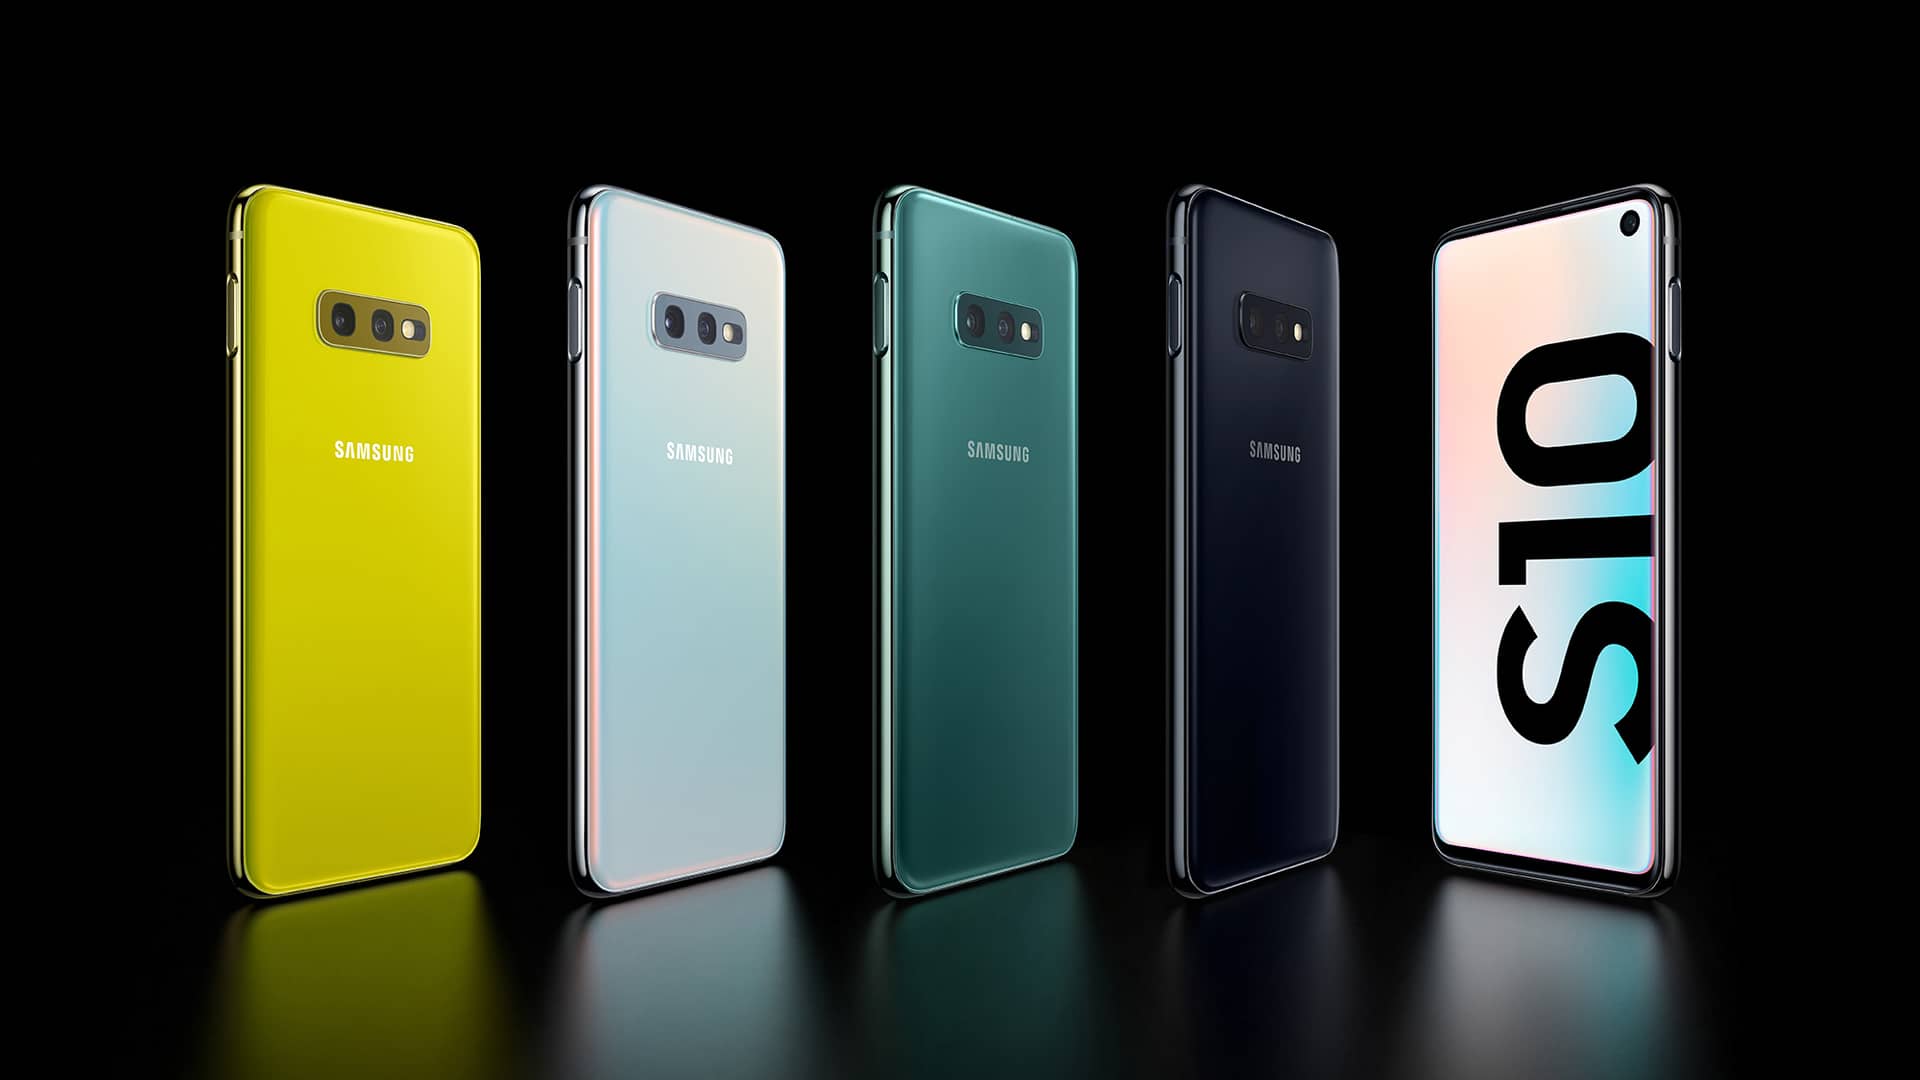 Render oficial de los diferentes colores en los que esta disponible el Samsung Galaxy S10e, disponible en jazztel